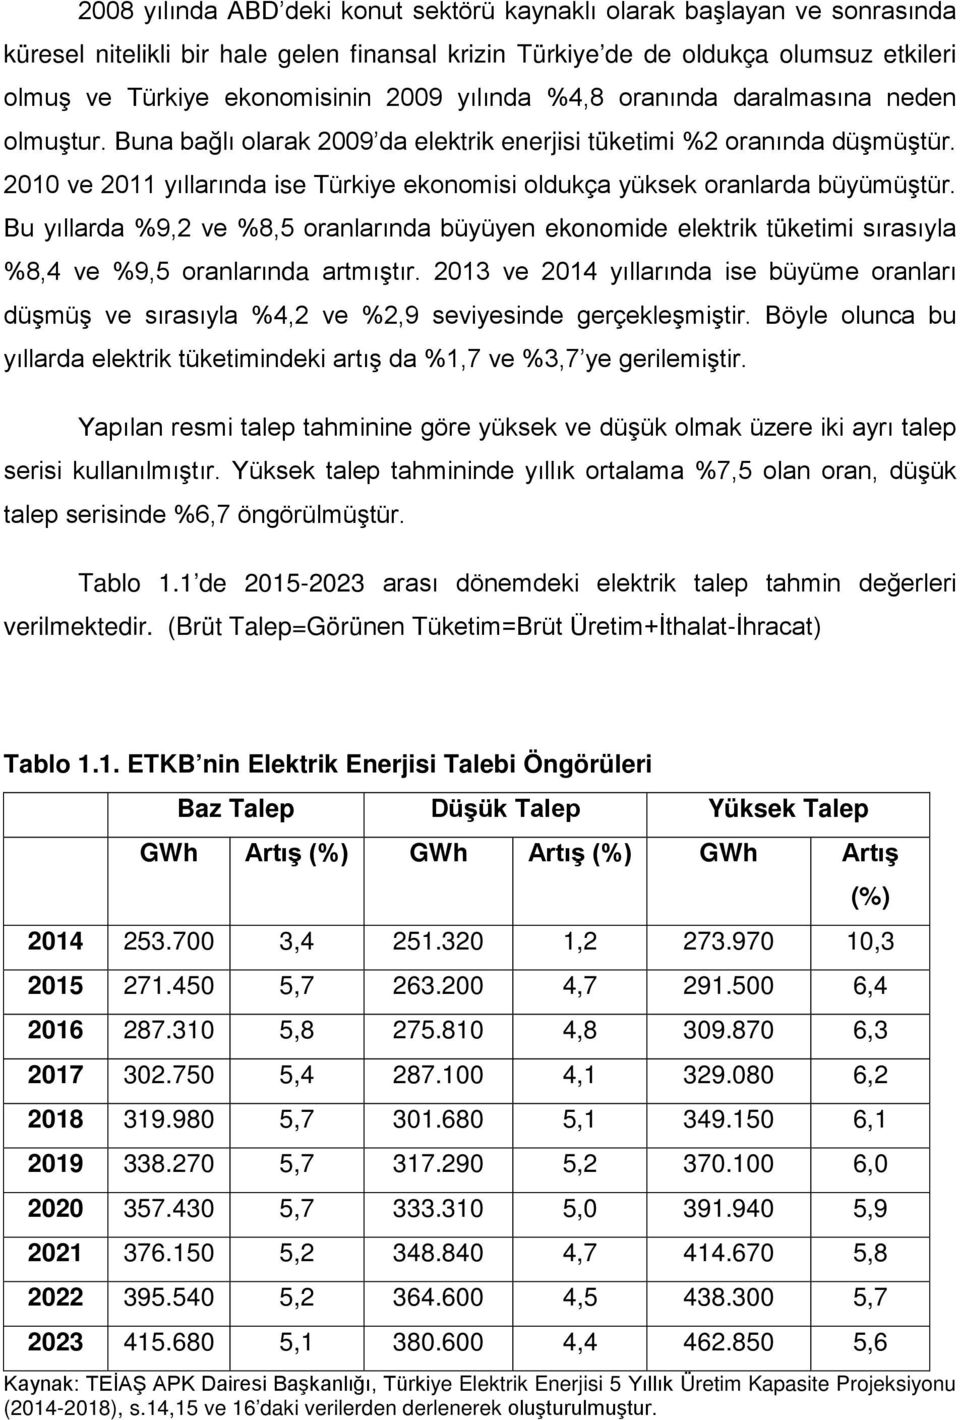 2010 ve 2011 yıllarında ise Türkiye ekonomisi oldukça yüksek oranlarda büyümüştür.